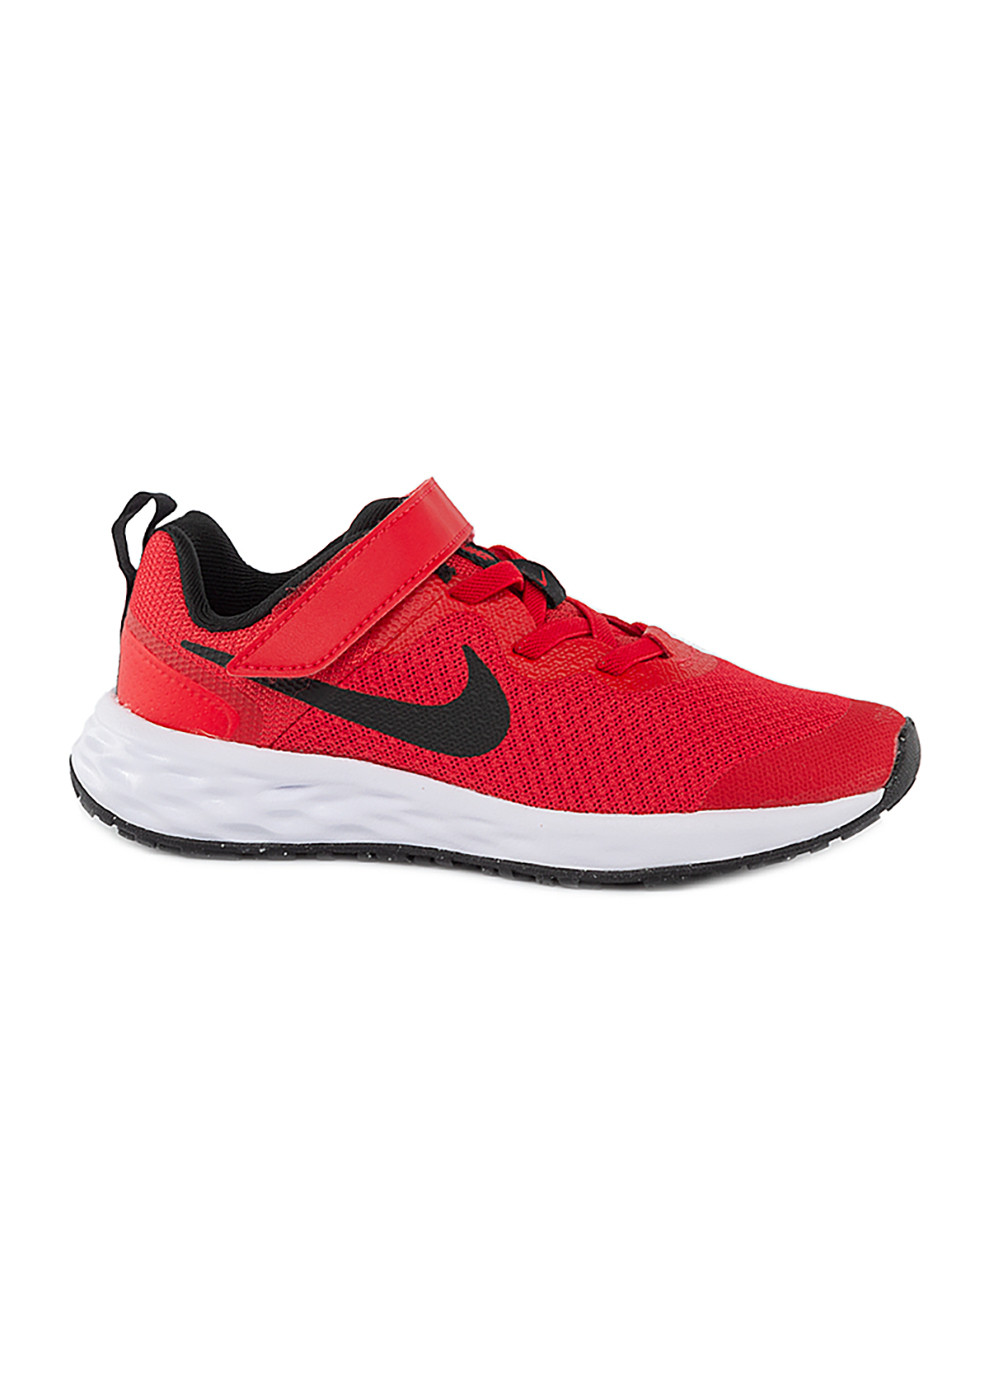 Красные демисезонные детские кроссовки revolution 6 nn (psv) красный Nike